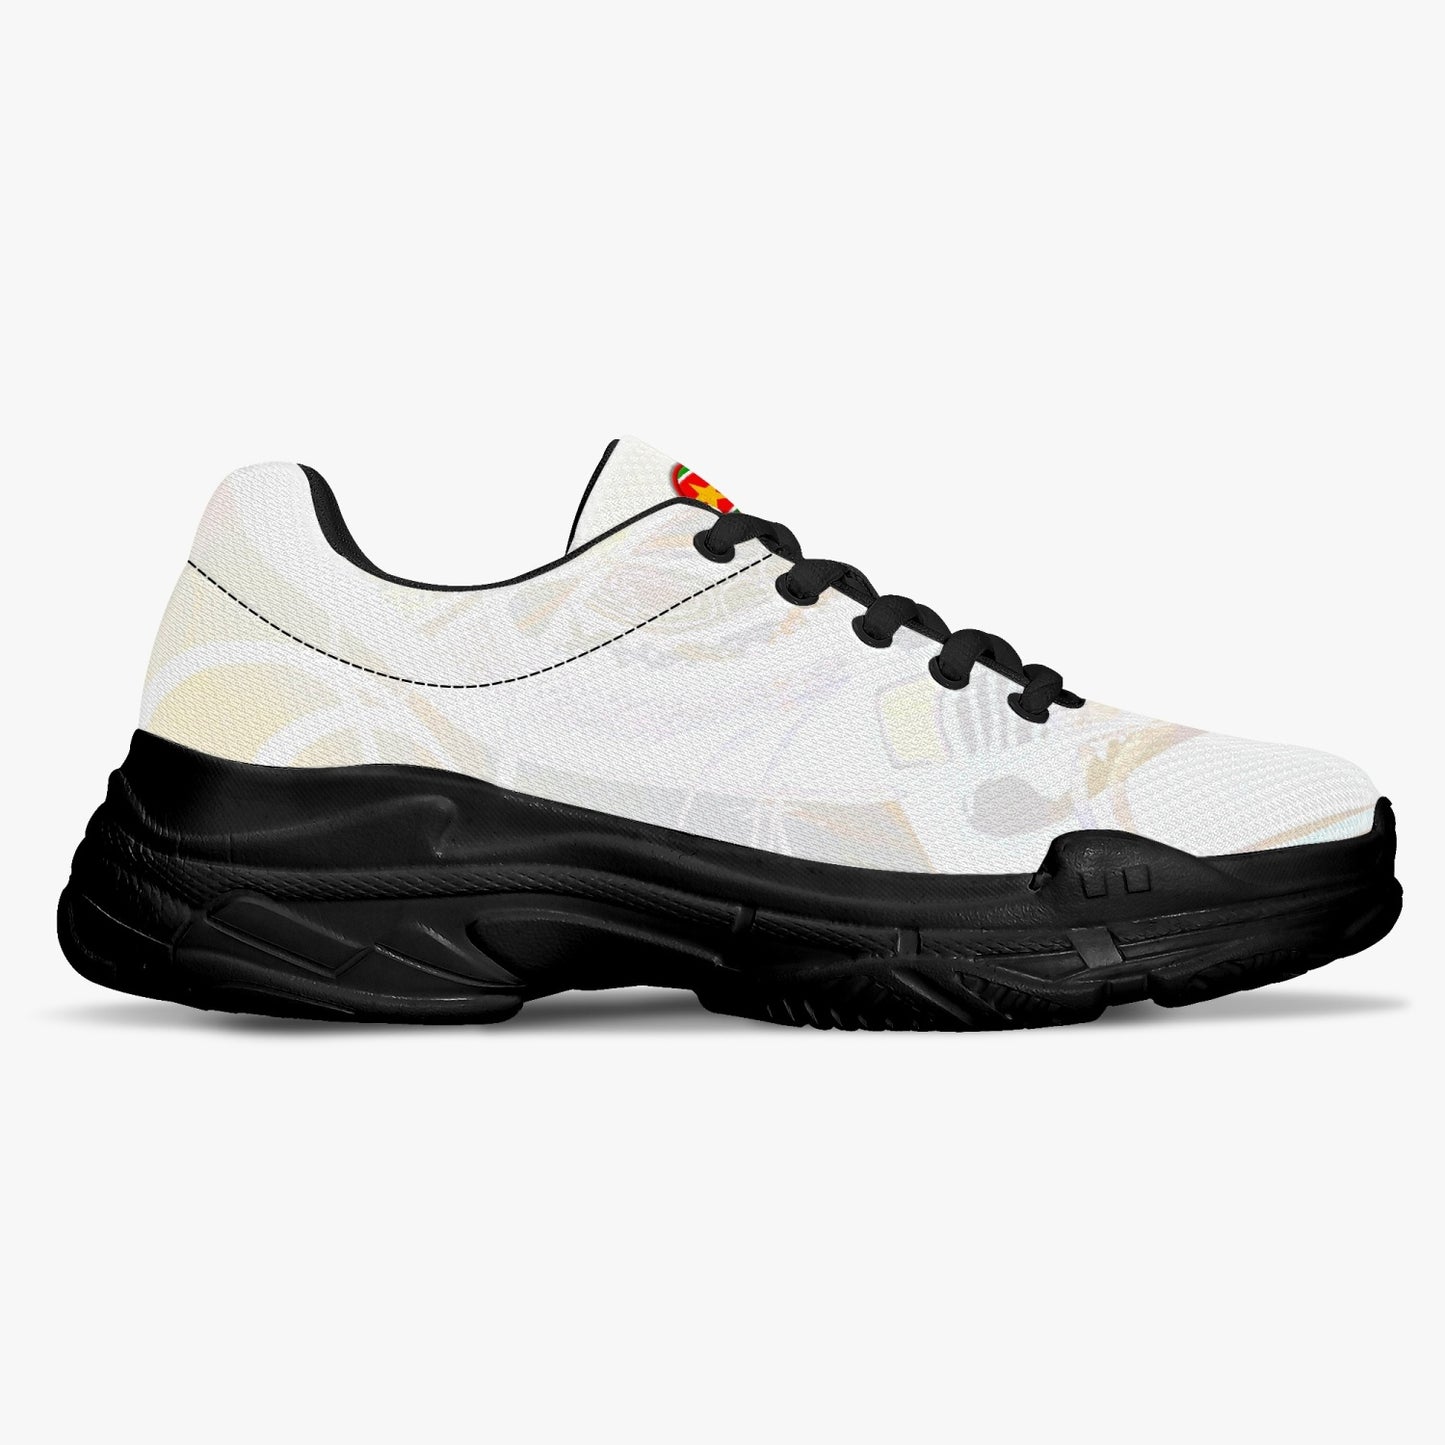 Unisex "Creme" Sneakers (weiß / schwarz)